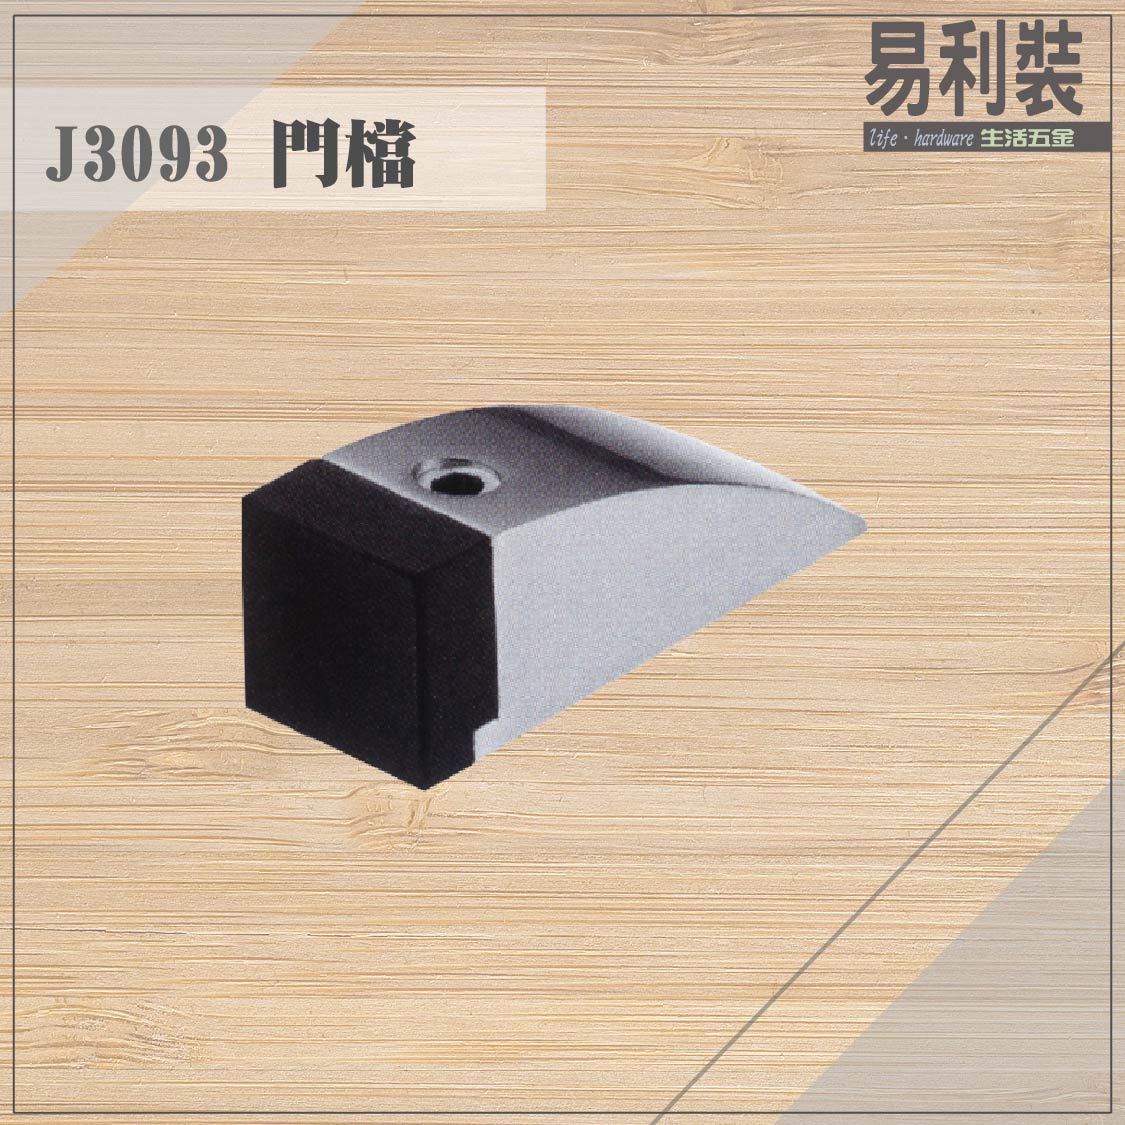 【 EASYCAN】J3093 不鏽鋼門檔 易利裝生活五金 浴室 廚房 房間